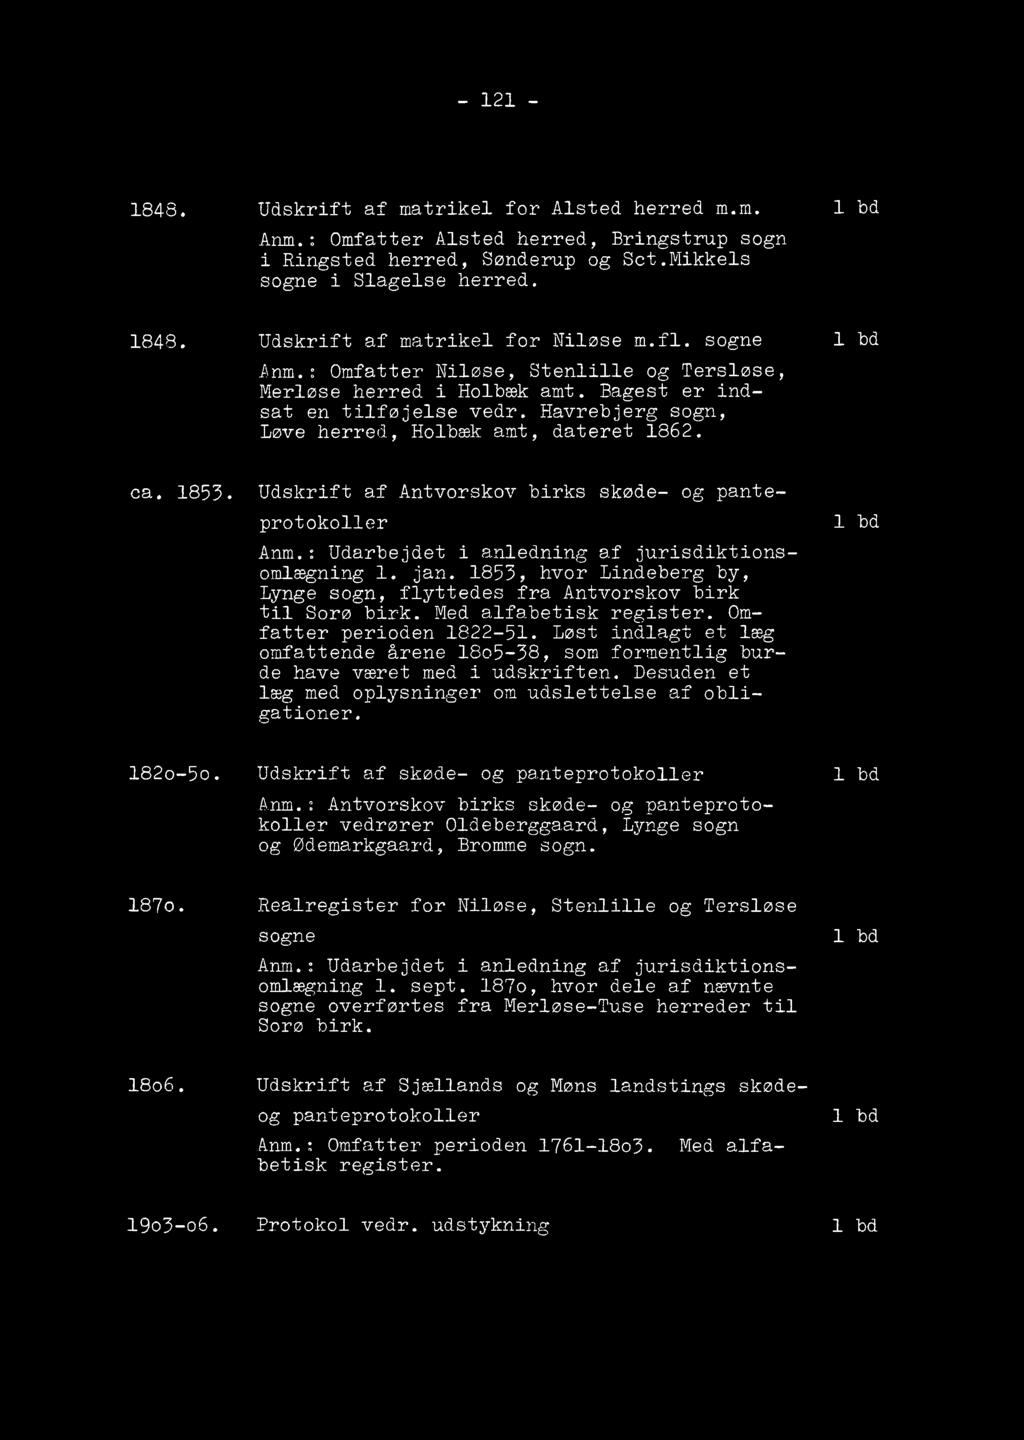 Havrebjerg sogn, Løve herred, Holbæk amt, dateret 1862. 1 bd ca. 1853. Udskrift af Antvorskov birks skøde- og pante- protokoller A n m.: Udarbejdet i anledning af jurisdiktionsomlægning 1. jan.